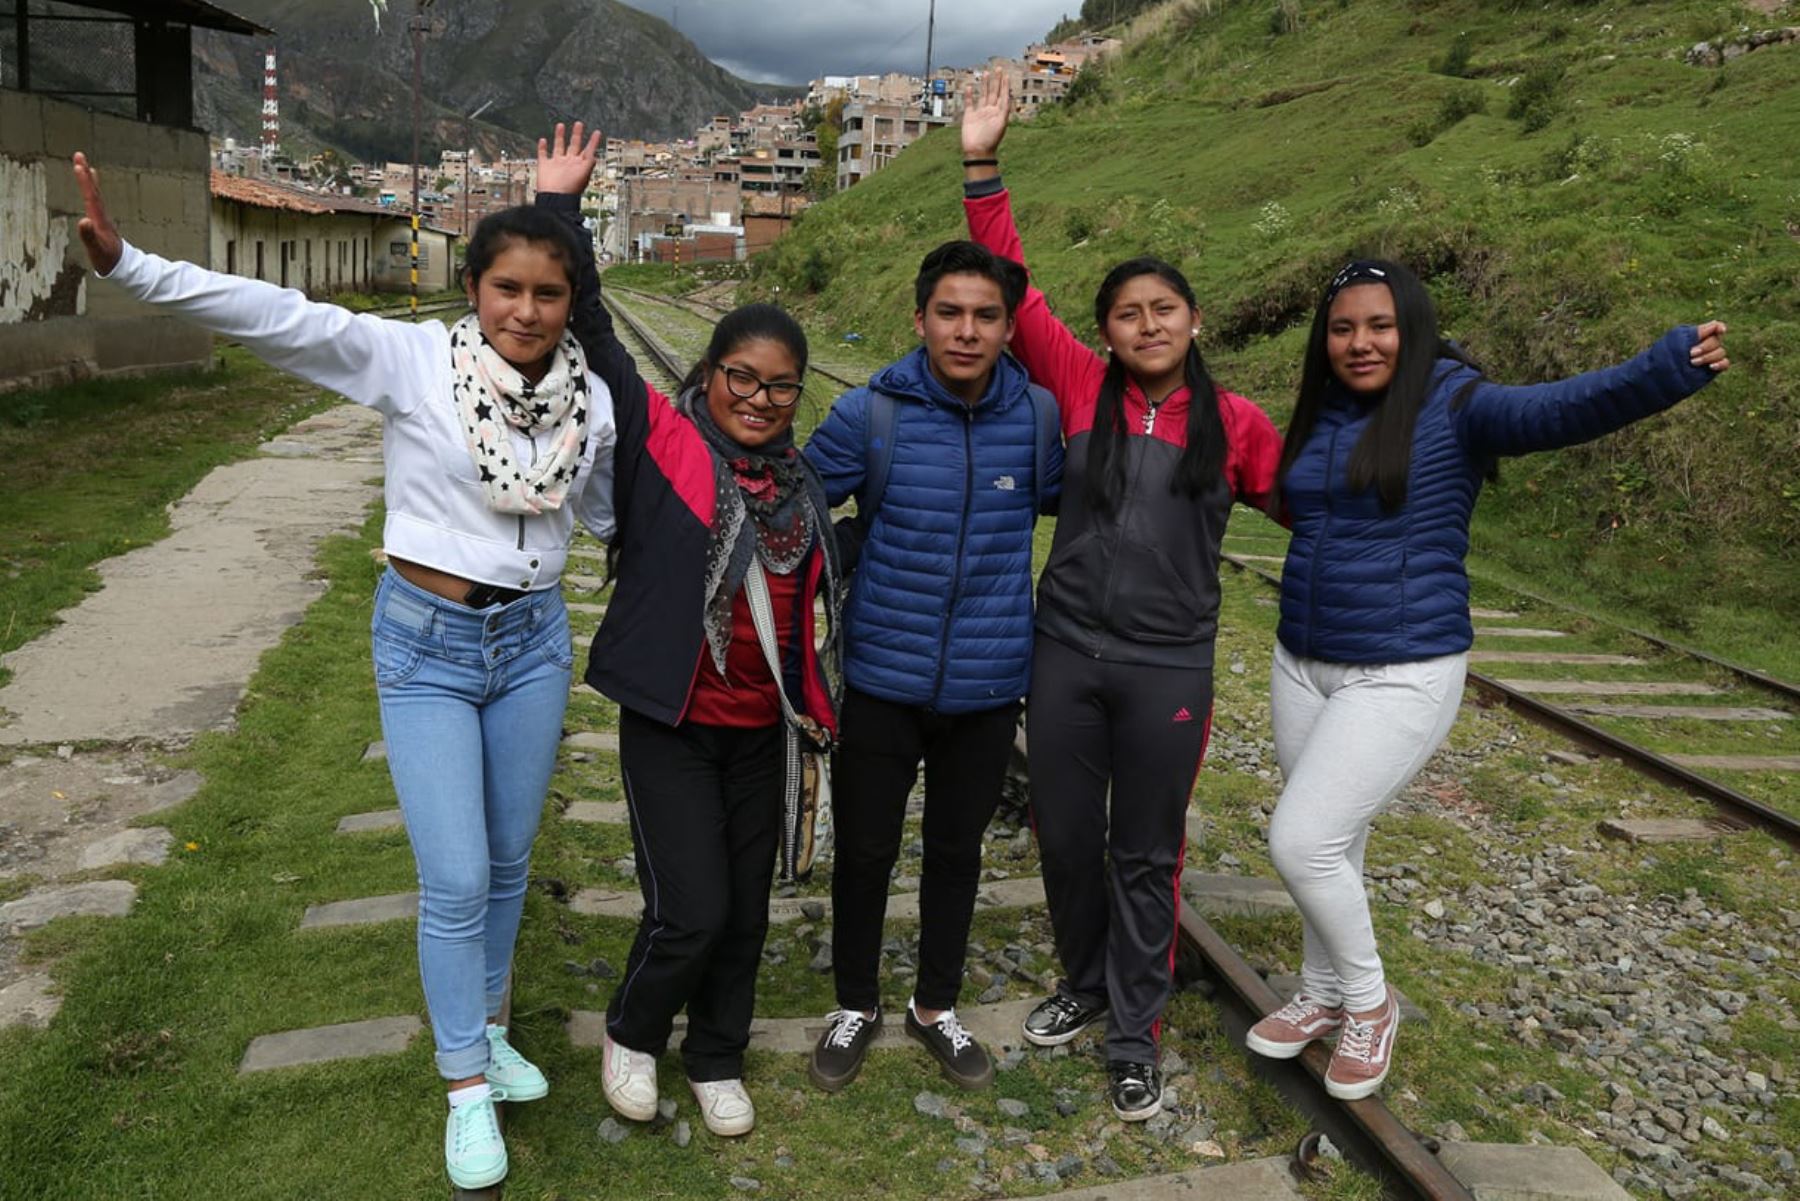 En víspera de celebrarse el Día del Niño Peruano, el Fondo de las Naciones Unidas para la Infancia (Unicef) saludó los esfuerzos del país para garantizar a la niñez y adolescencia el ejercicio pleno de sus derechos.